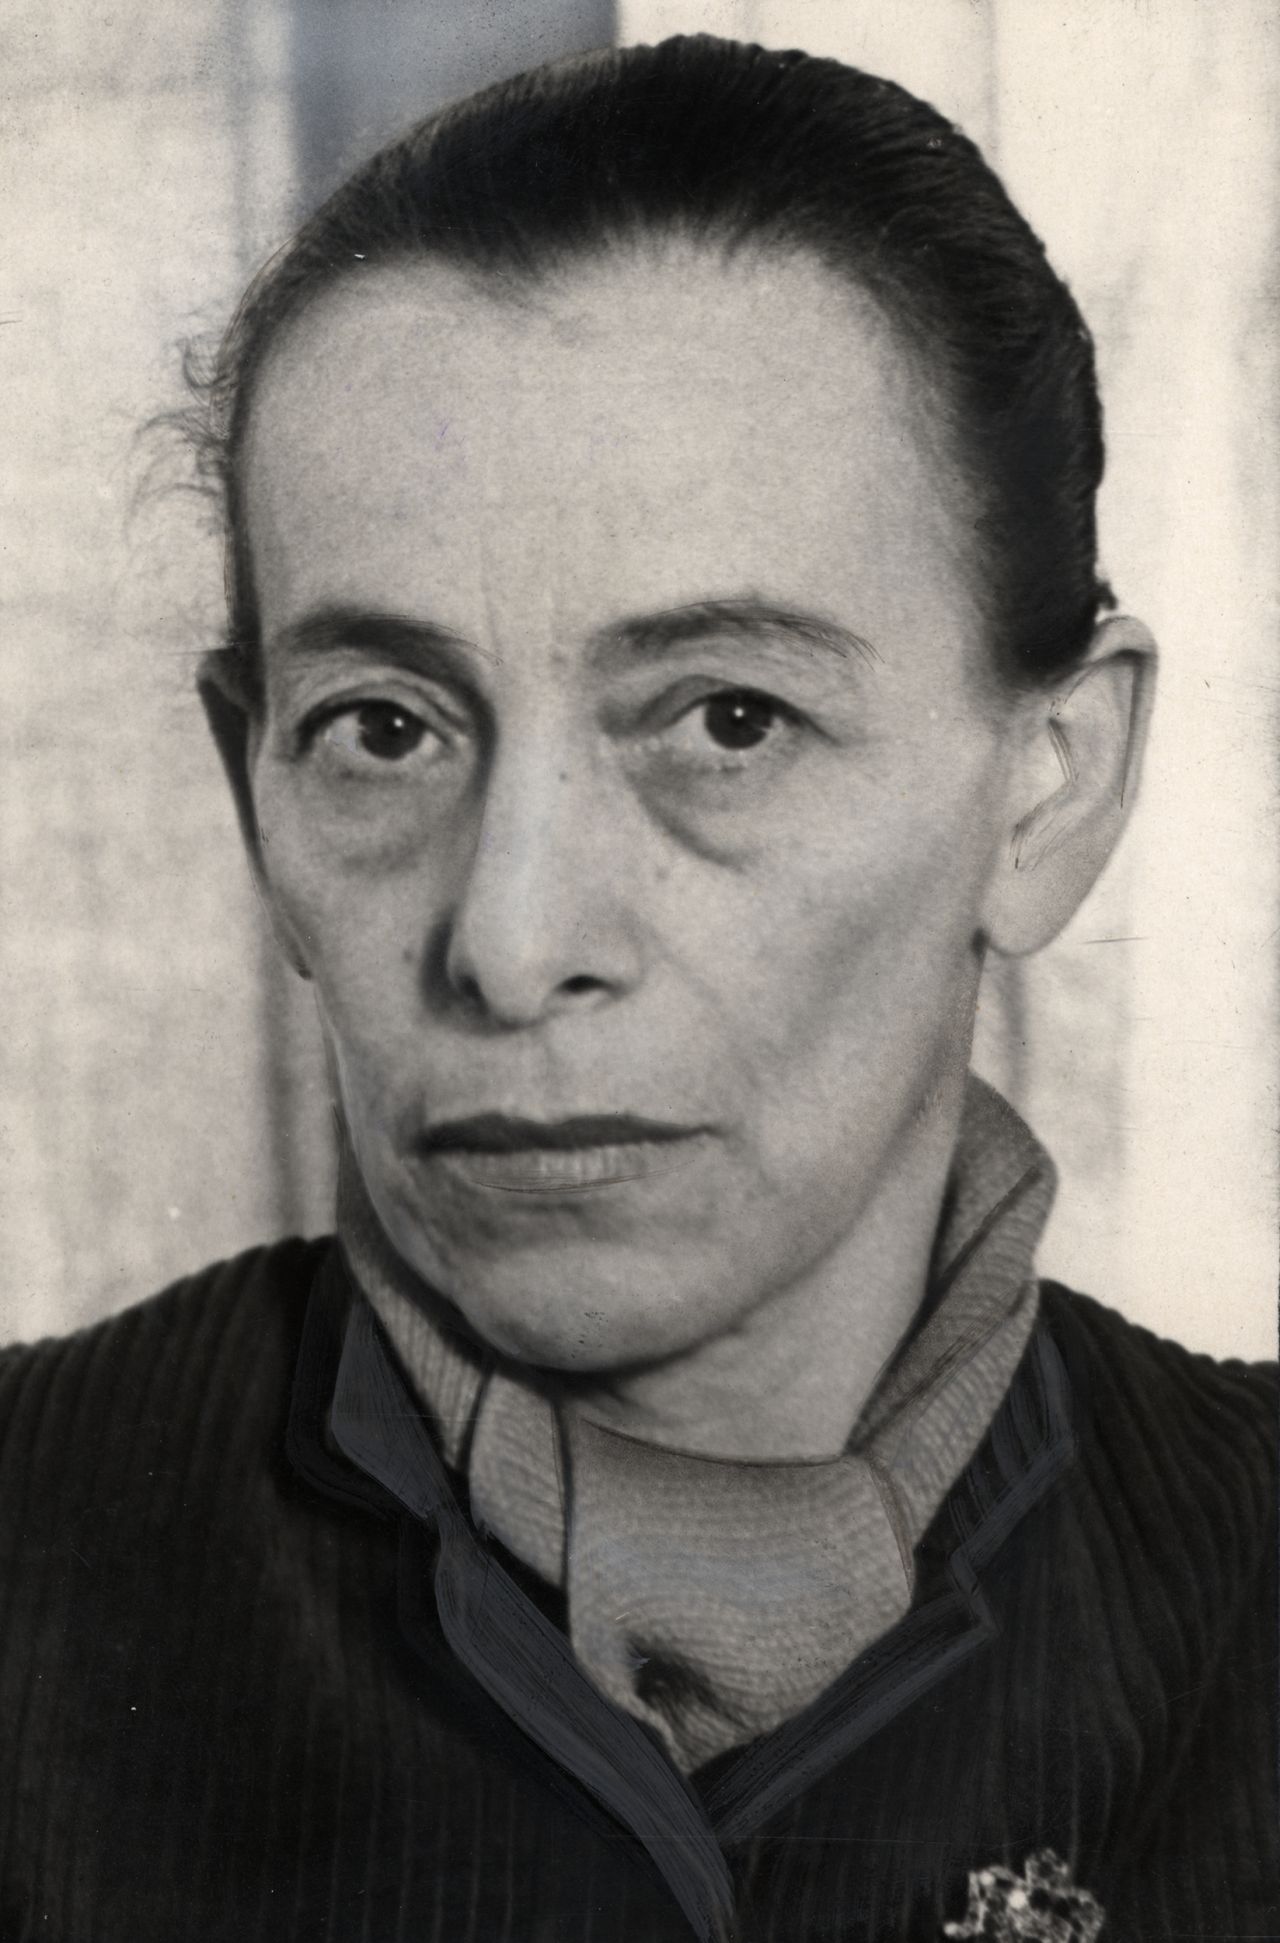 Porträtfotografie von Helene Weigel, 1950
